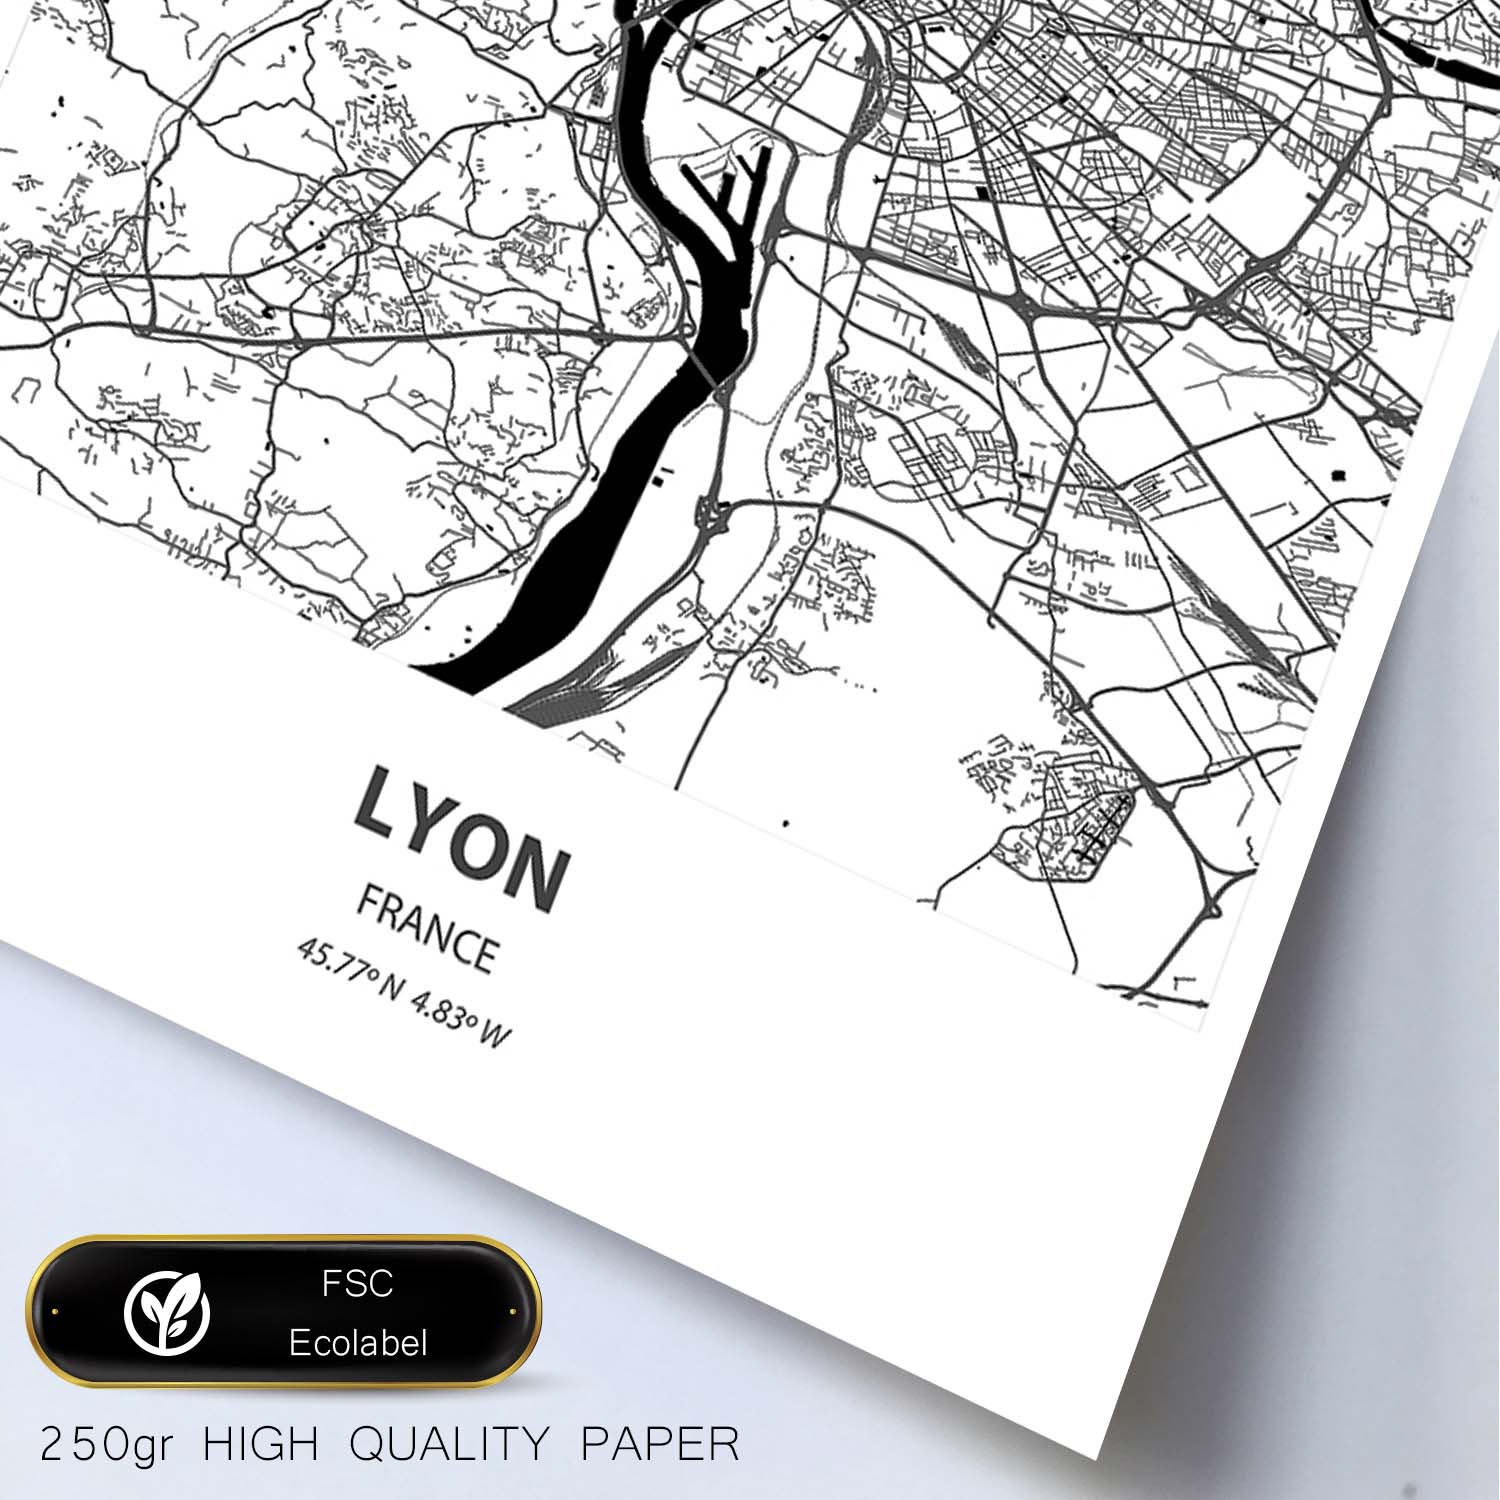 Poster con mapa de Lyon - Francia. Láminas de ciudades de Francia con mares y ríos en color negro.-Artwork-Nacnic-Nacnic Estudio SL